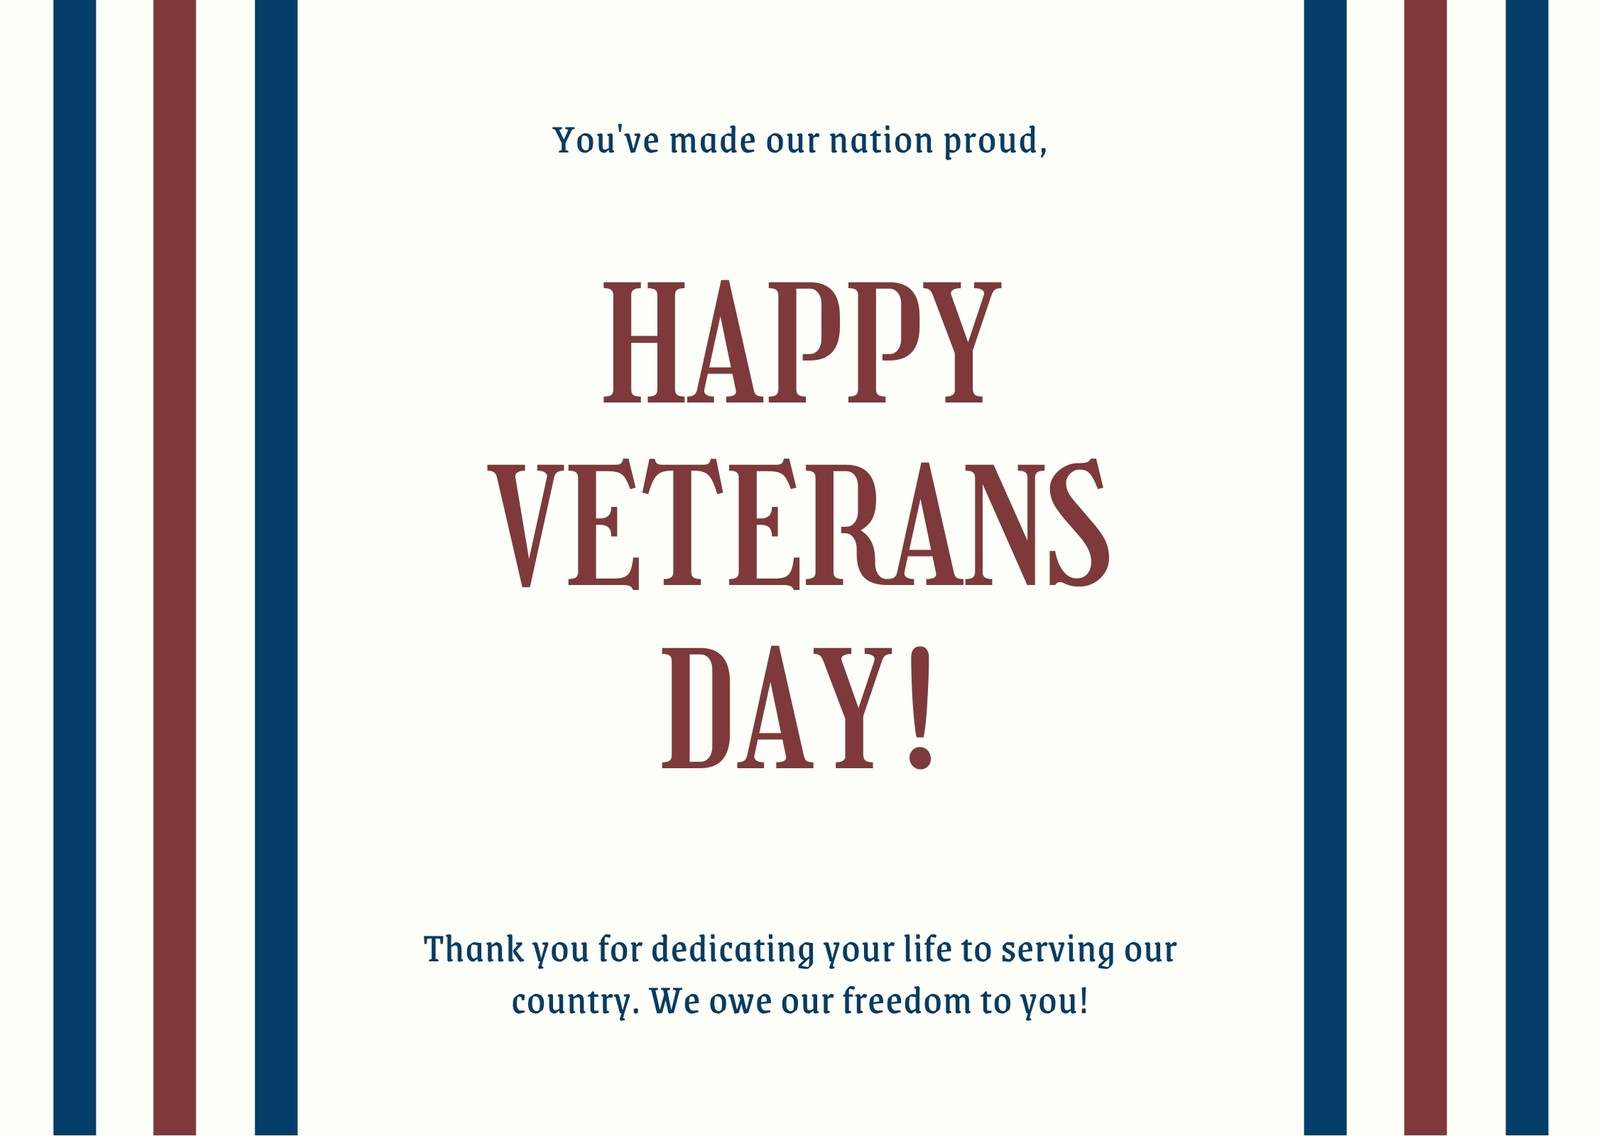 Veterans Day Ecards, Free & Premium Cards